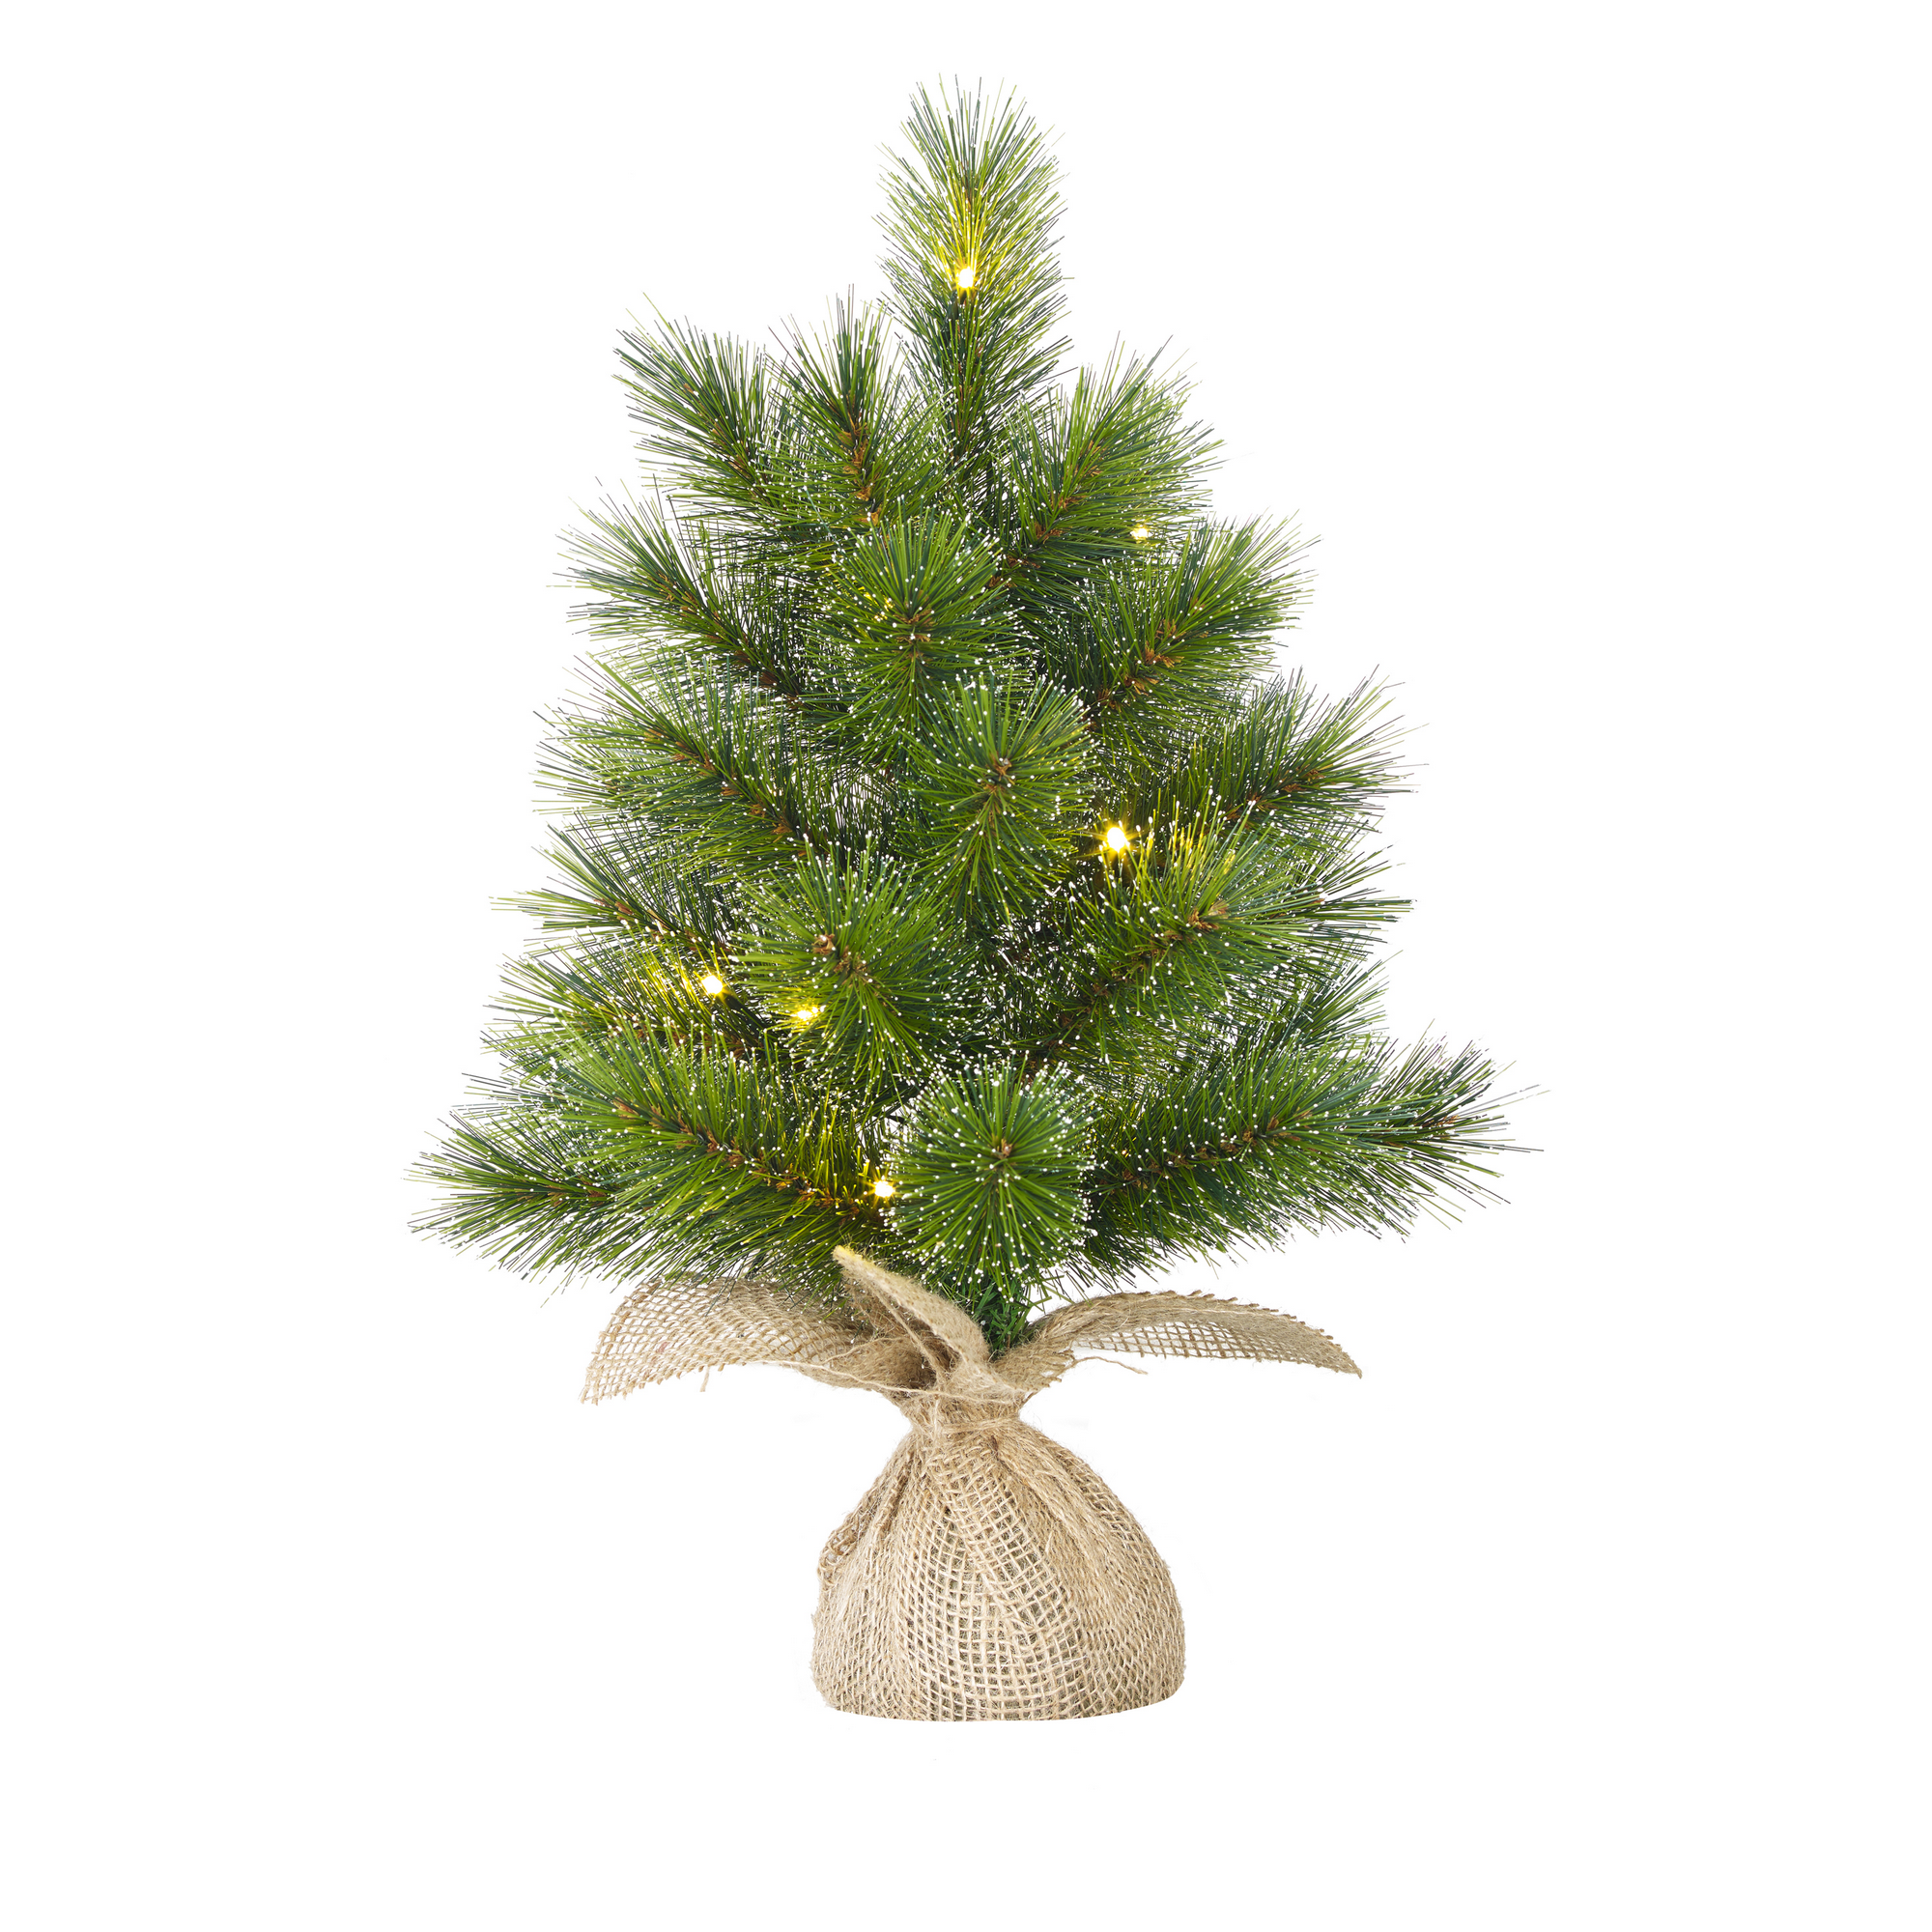 Künstlicher Weihnachtsbaum 'Glendon' grün 60 cm, mit LED-Beleuchtung + product picture